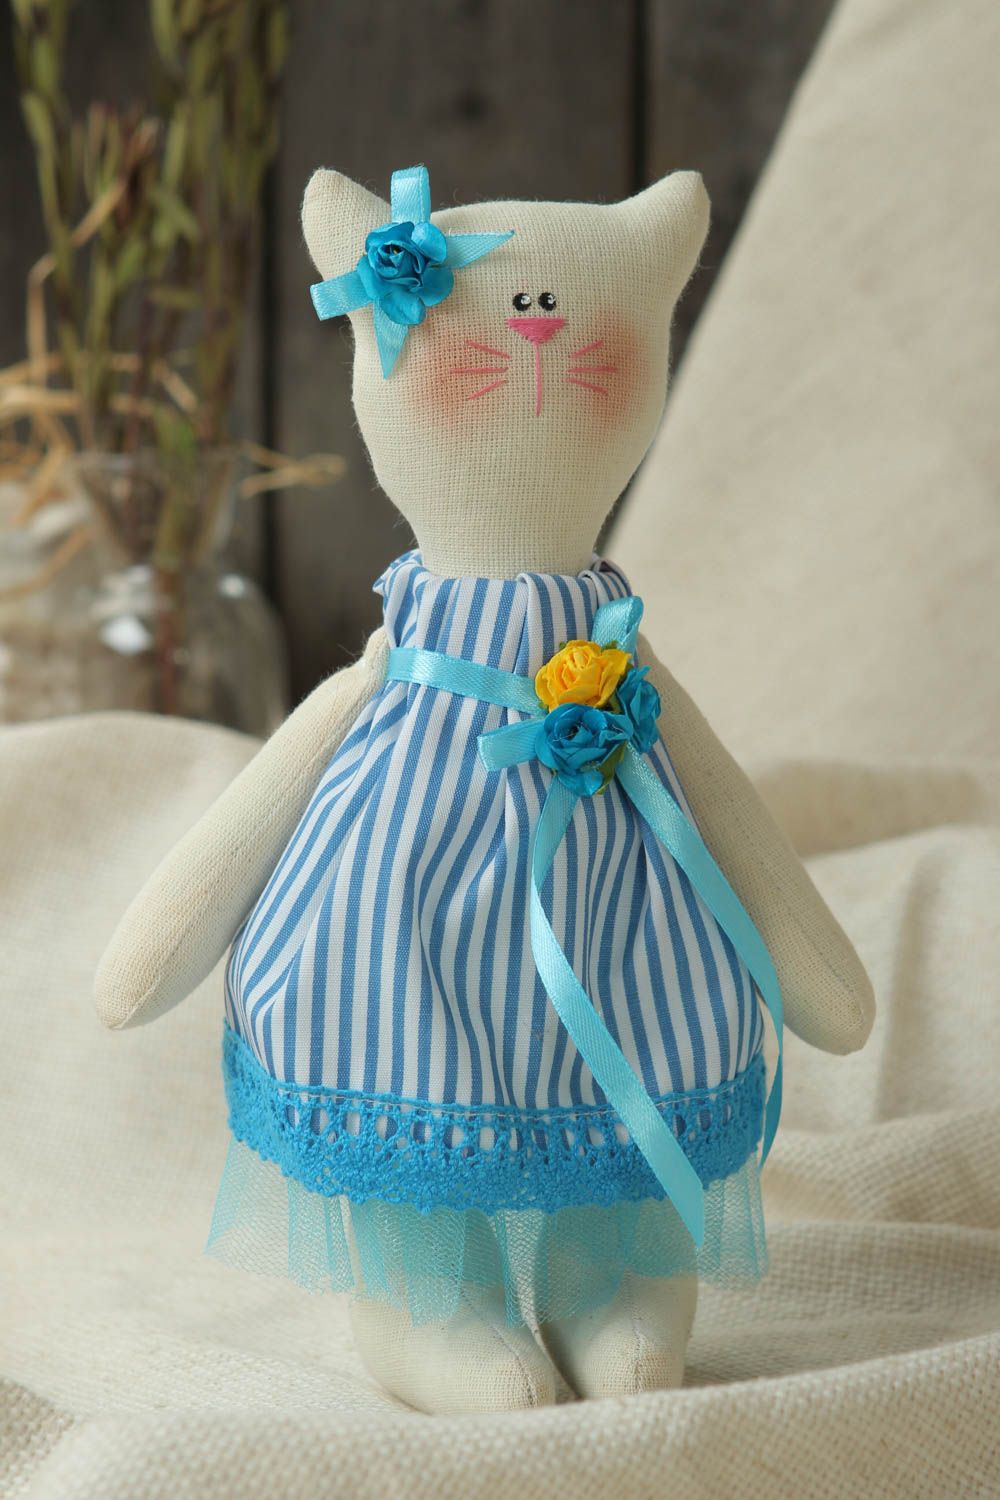 Игрушка ручной работы игрушка кошка оригинальная игрушка в полосатом платье фото 1